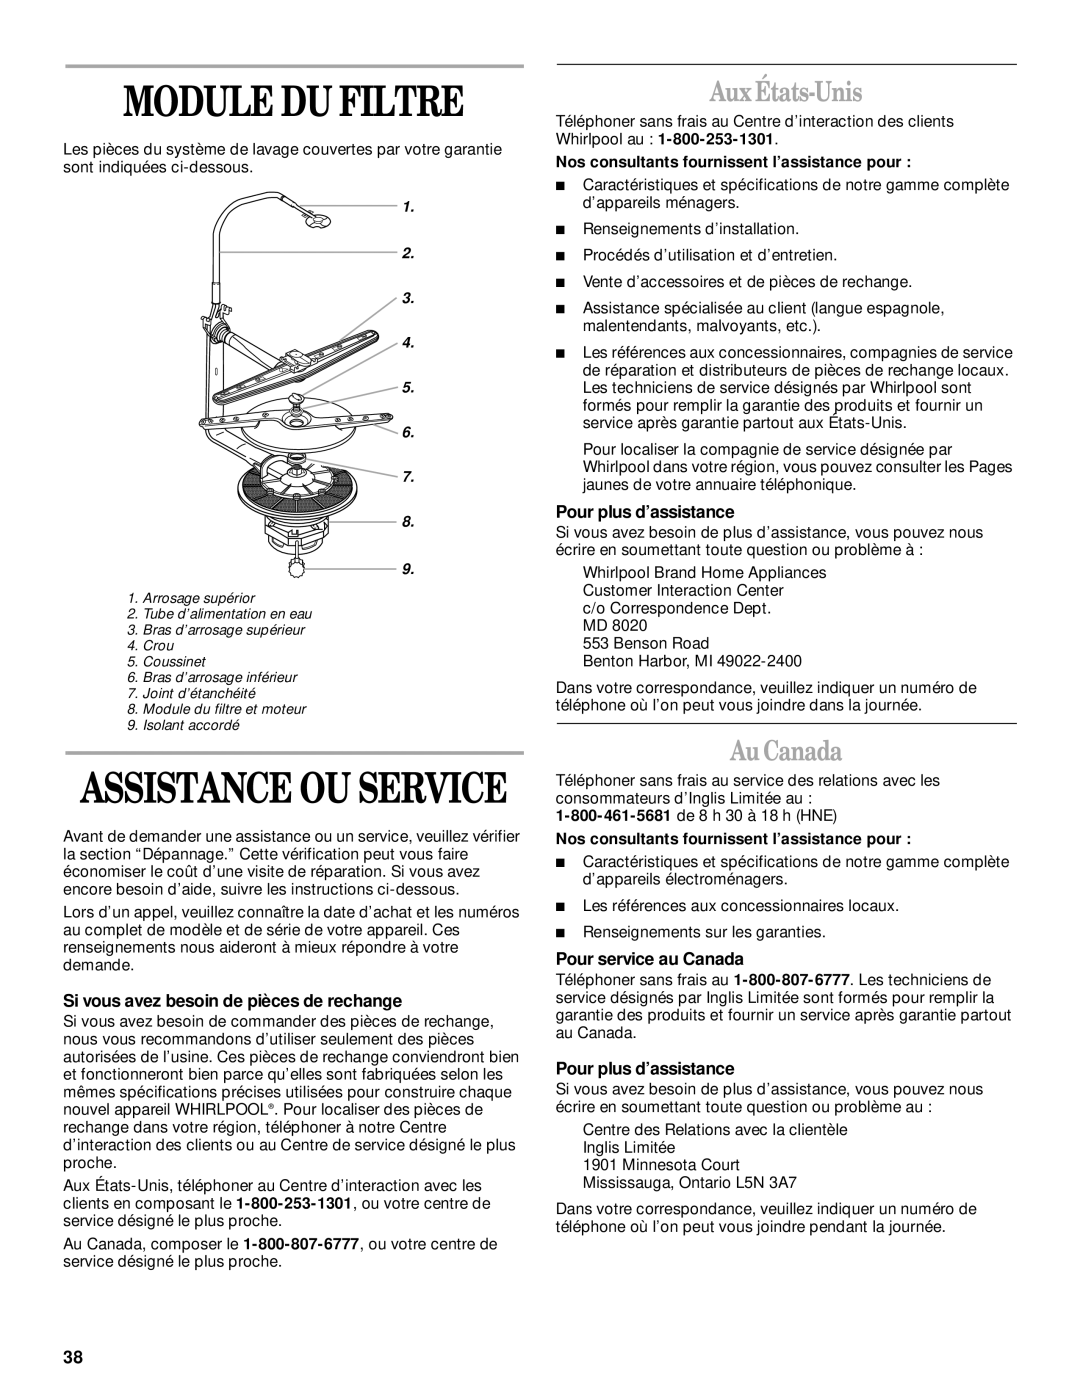 Whirlpool 1000, 931 manual Module Du Filtre, Assistance Ou Service, Aux États-Unis, Au Canada, Pour plus d’assistance 